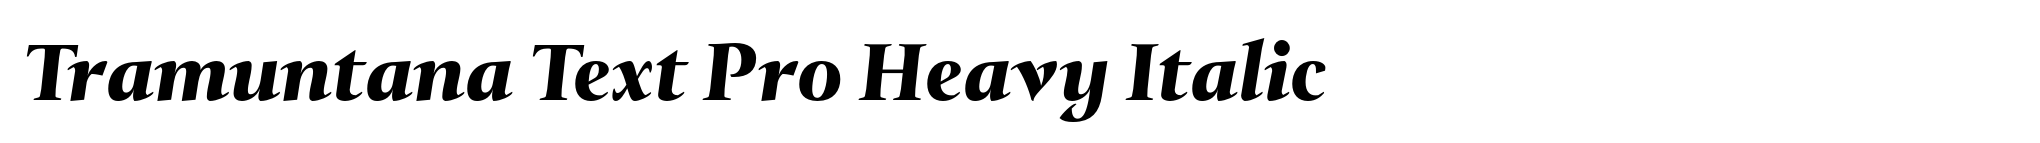 Tramuntana Text Pro Heavy Italic image